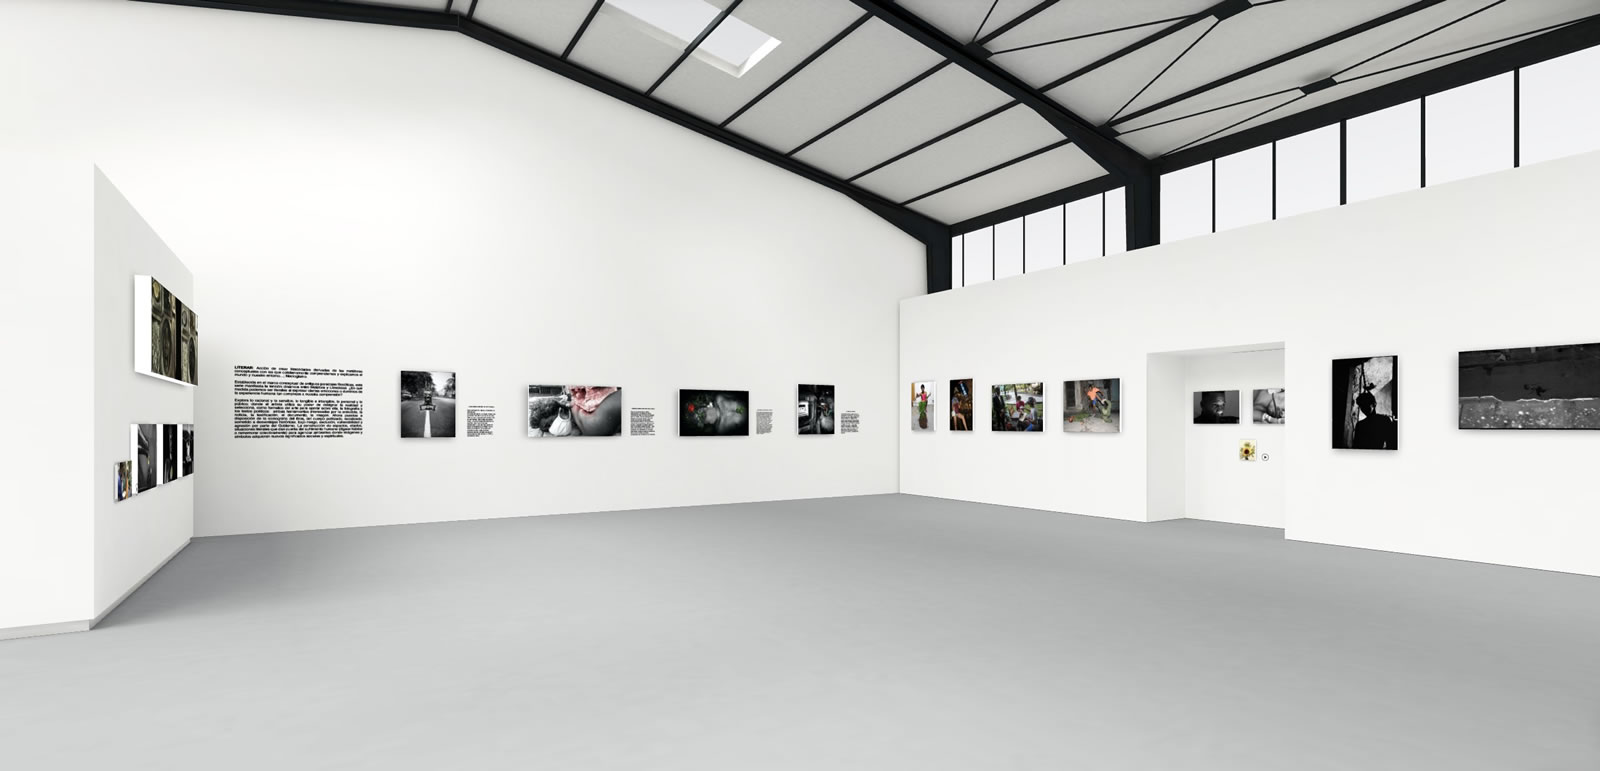 «Arte en resistencia»: exposición digital del Movimiento San Isidro